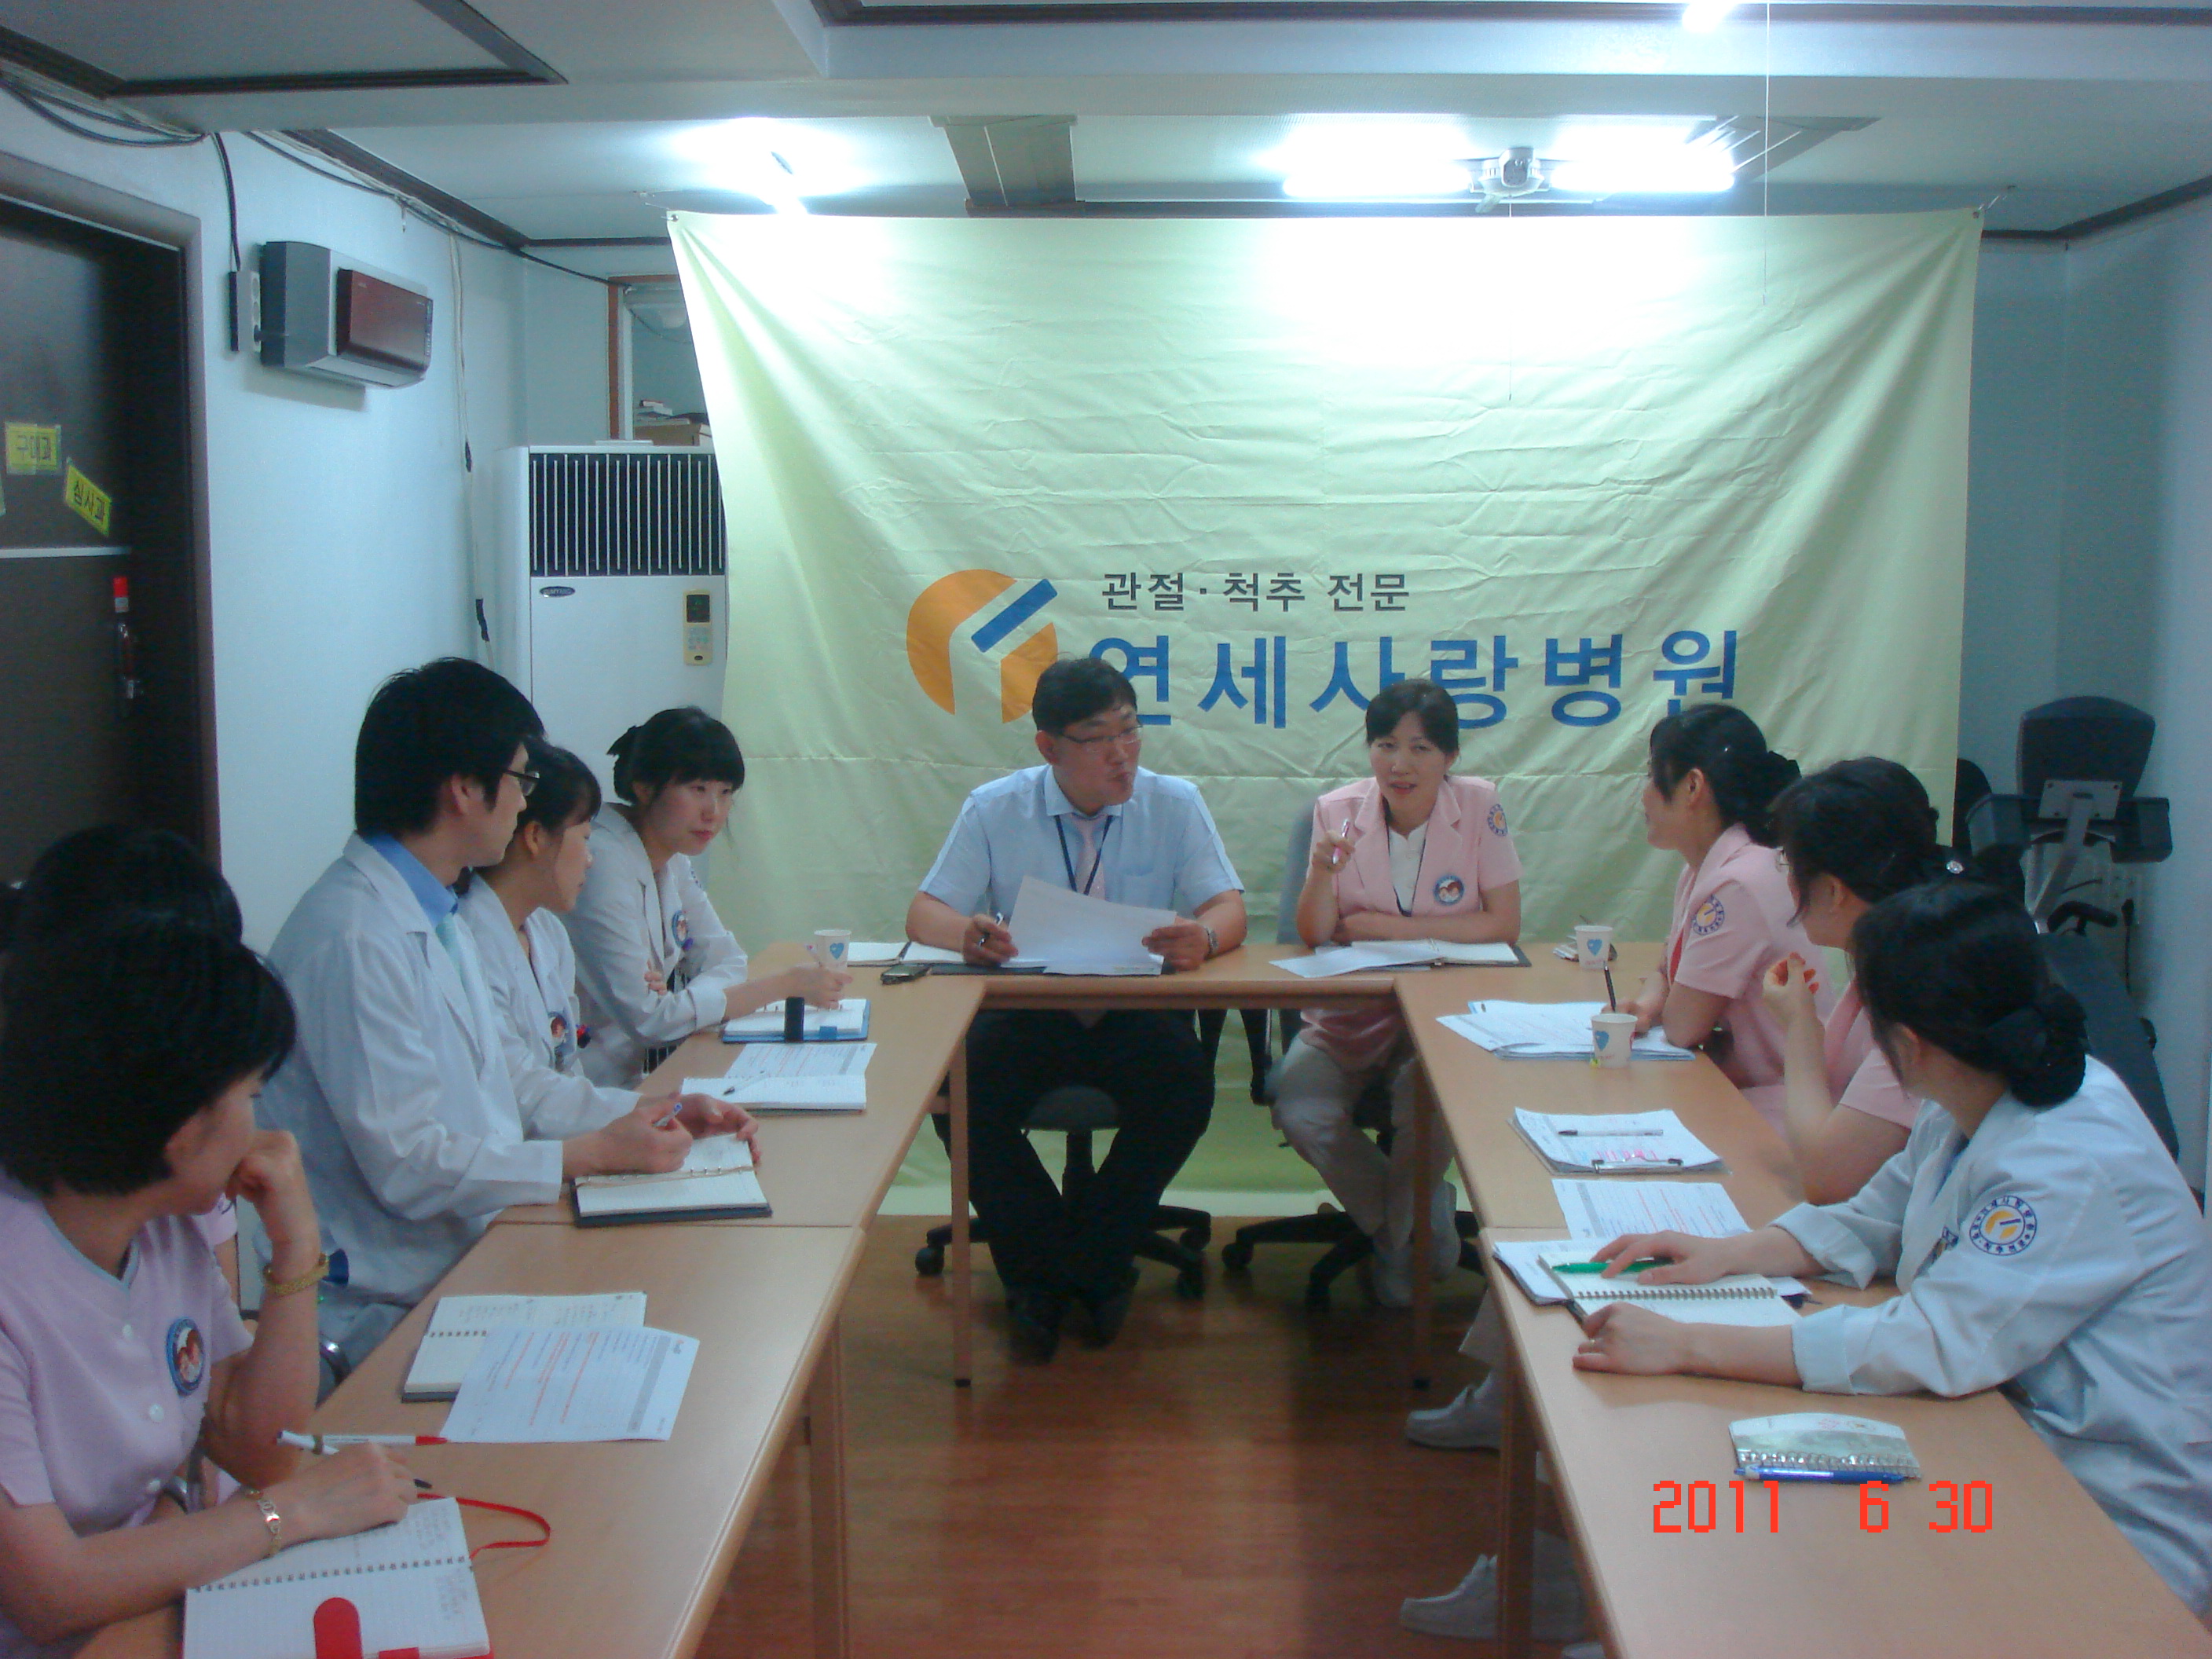 [강북점] 2011년 6월 30일 - 실무진 회의 개최 게시글의 6번째 첨부파일입니다.